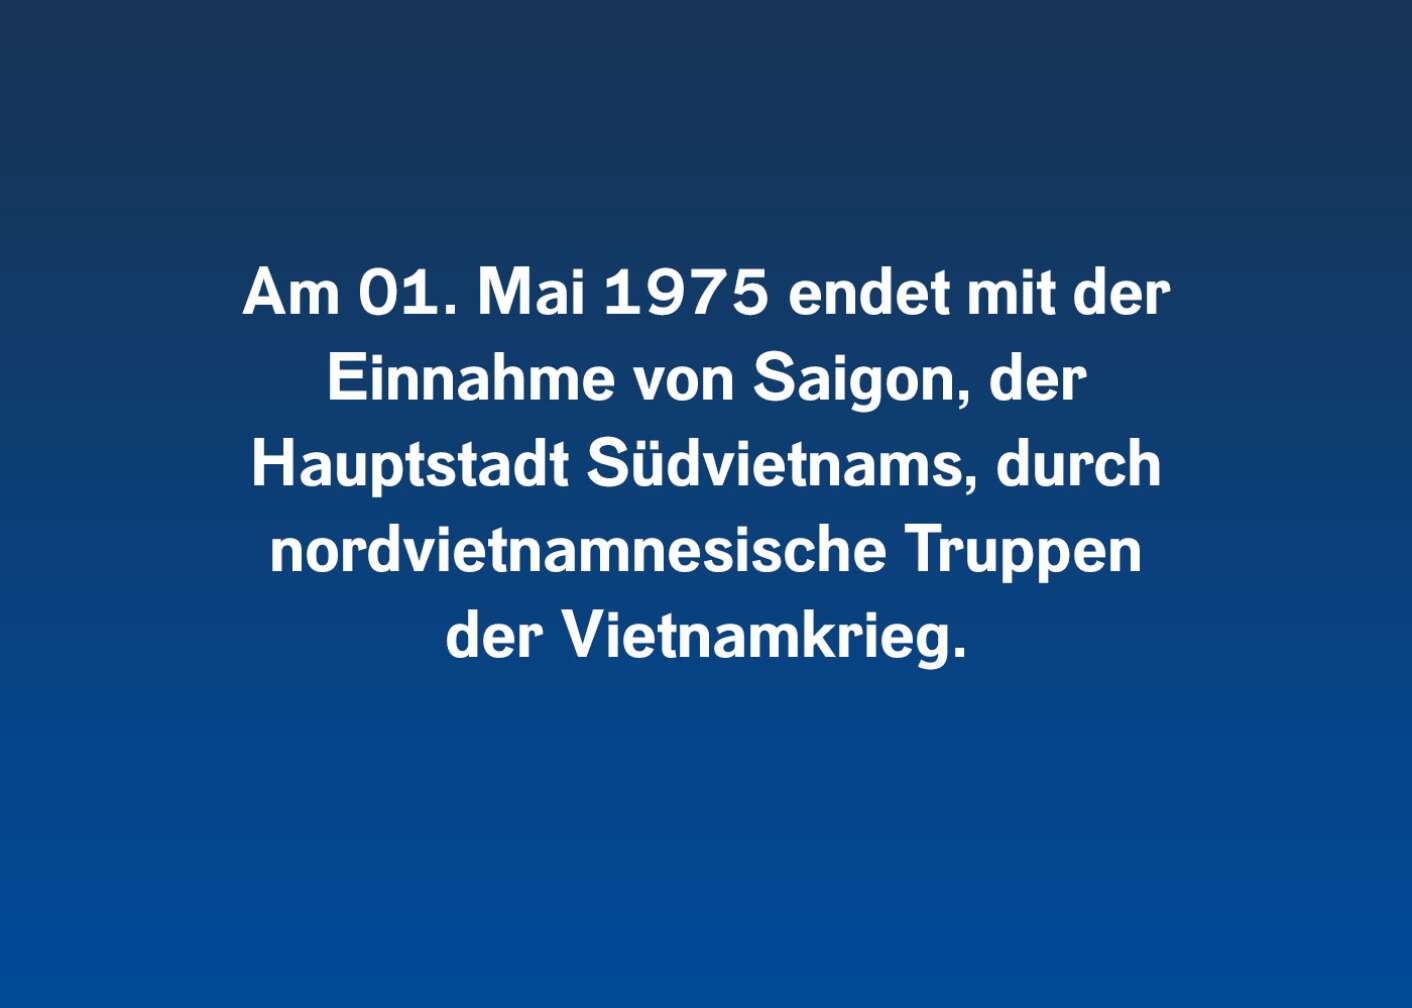 Am 01. Mai 1975 endet mit der Einnahme von Saigon, der Hauptstadt Südvietnams, durch nordvietnamnesische Truppen der Vietnamkrieg.